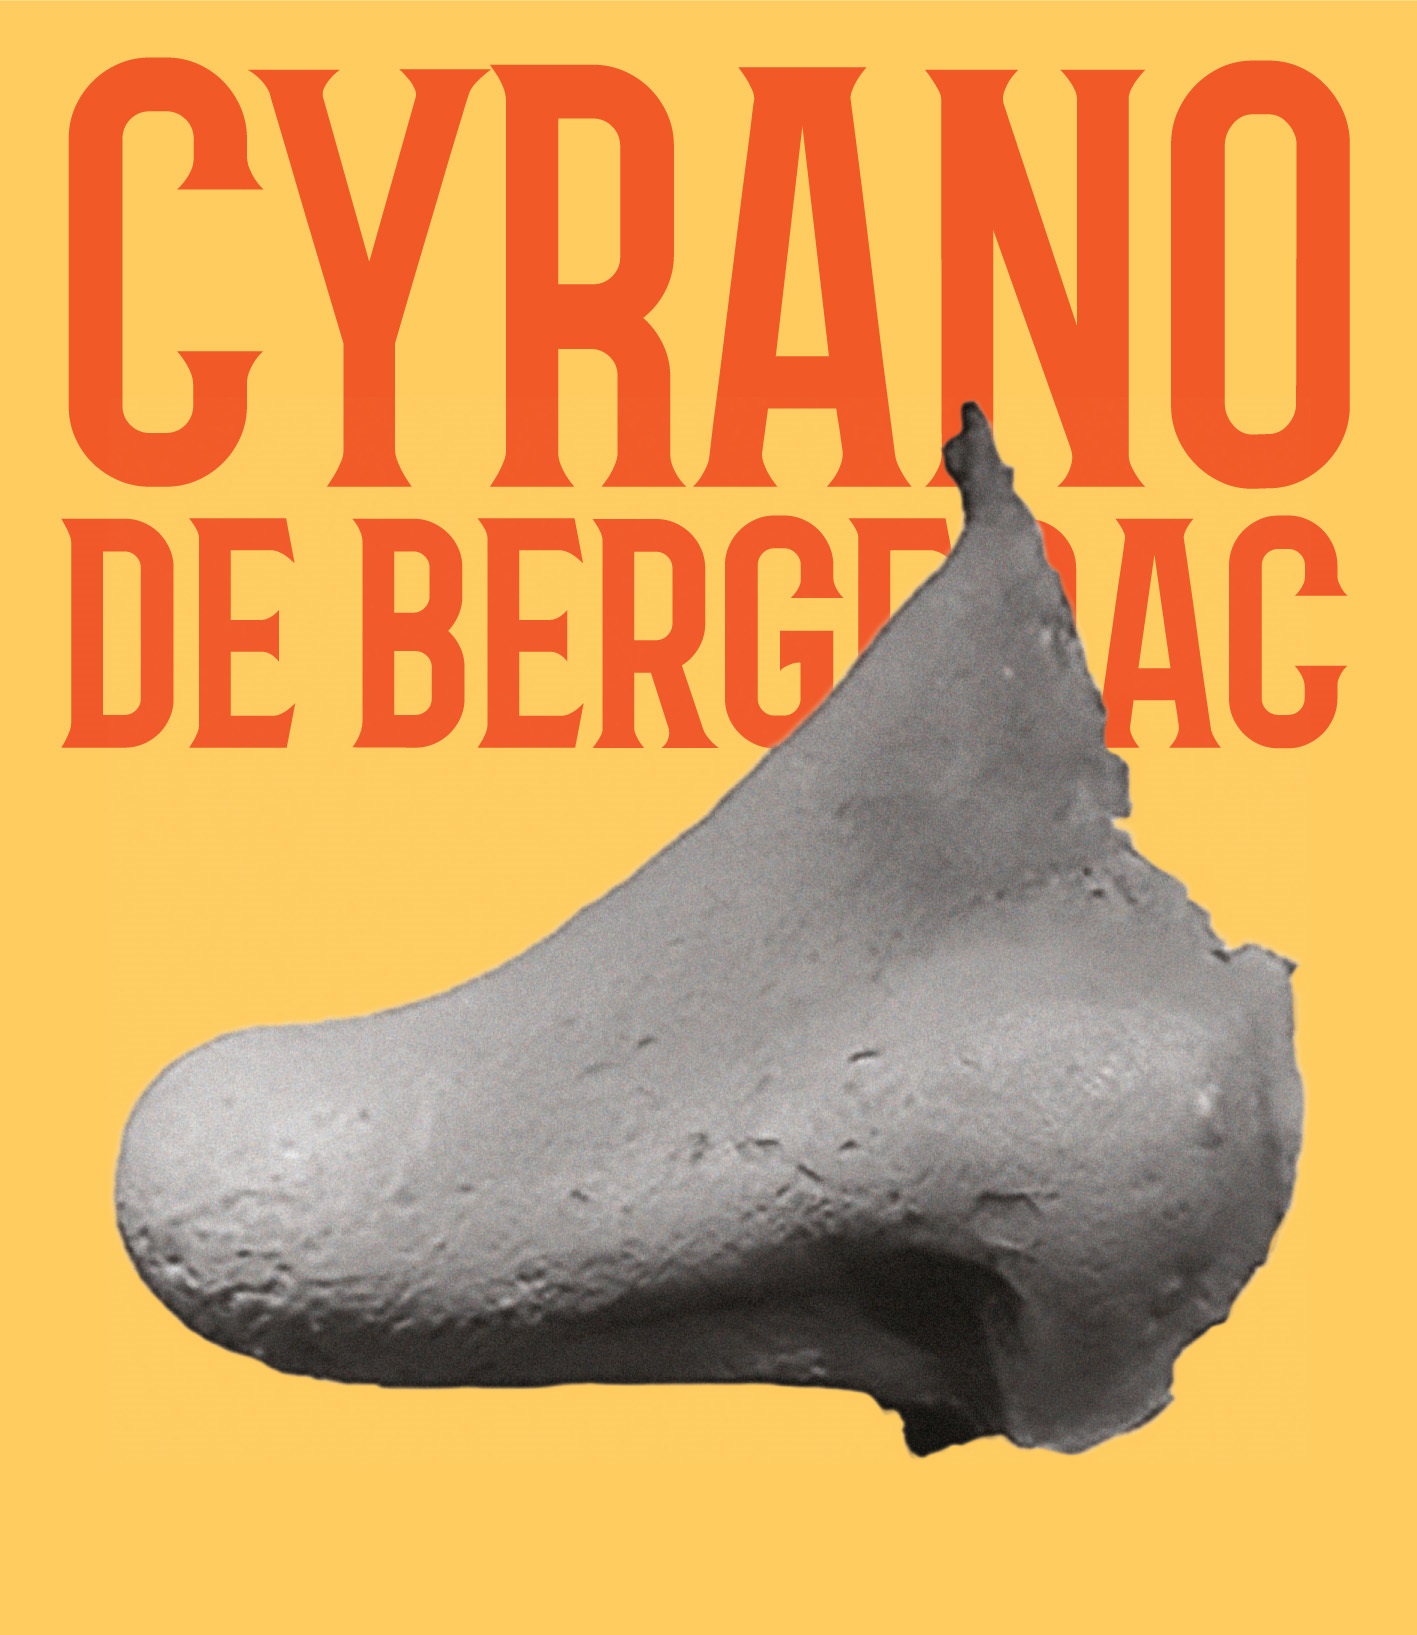 CYRANO DE BERGERAC - Teatro di Lonigo